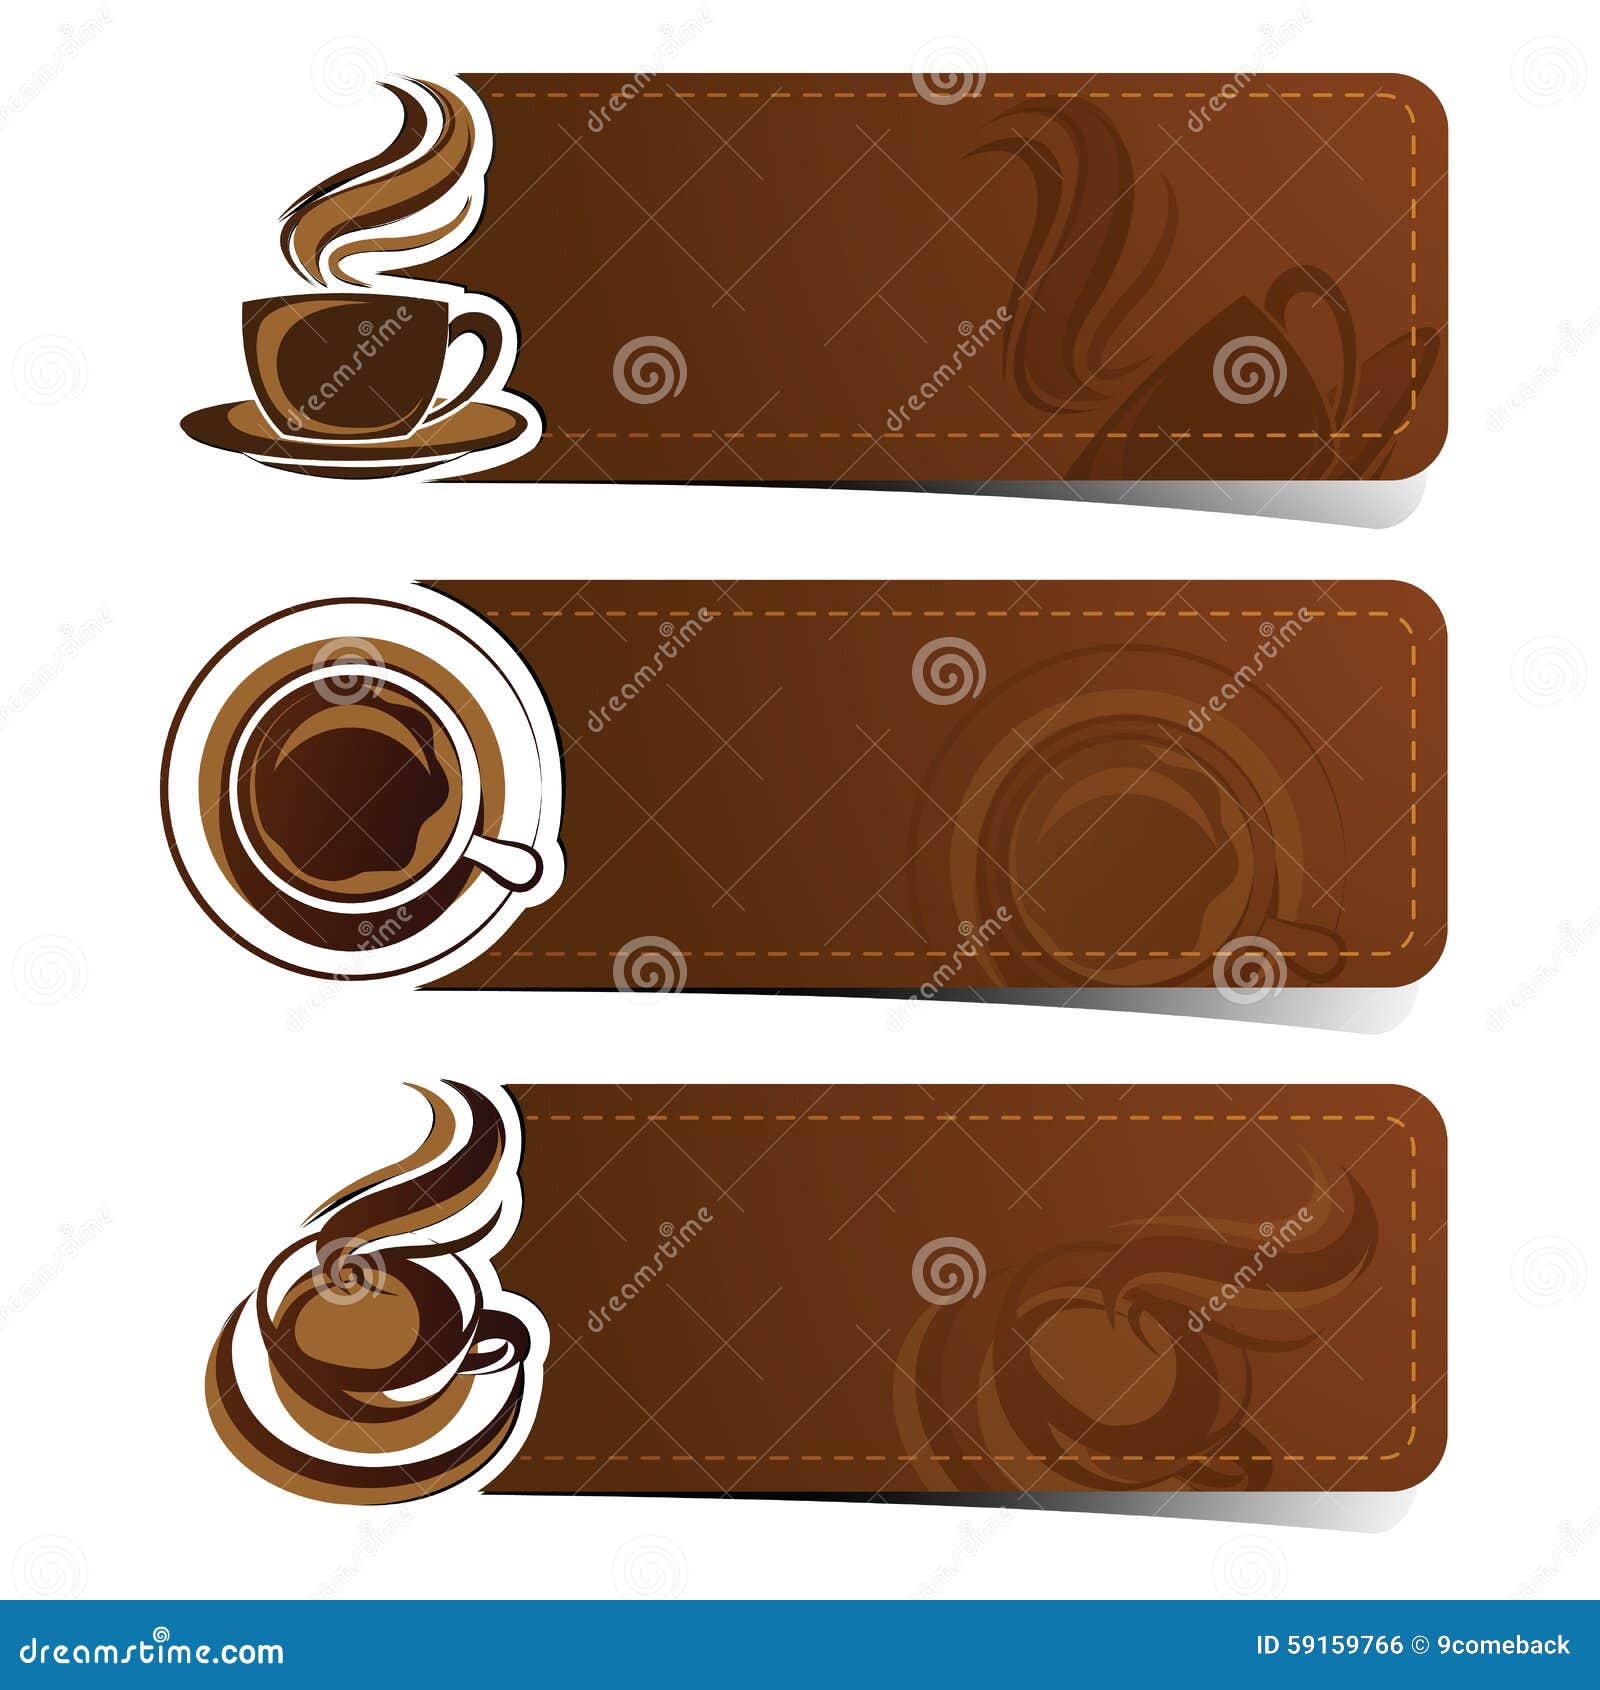 Banner cà phê vector với màu nâu ấm áp và đầy đủ hương vị sẽ làm cho bạn cảm thấy như đang uống một ly cà phê thật sự. Minh họa nhãn banner này sẽ trông rất chuyên nghiệp và đẹp mắt trên trang web hoặc bài đăng của bạn. Tải về ngay từ Freepik để thấy sự khác biệt!